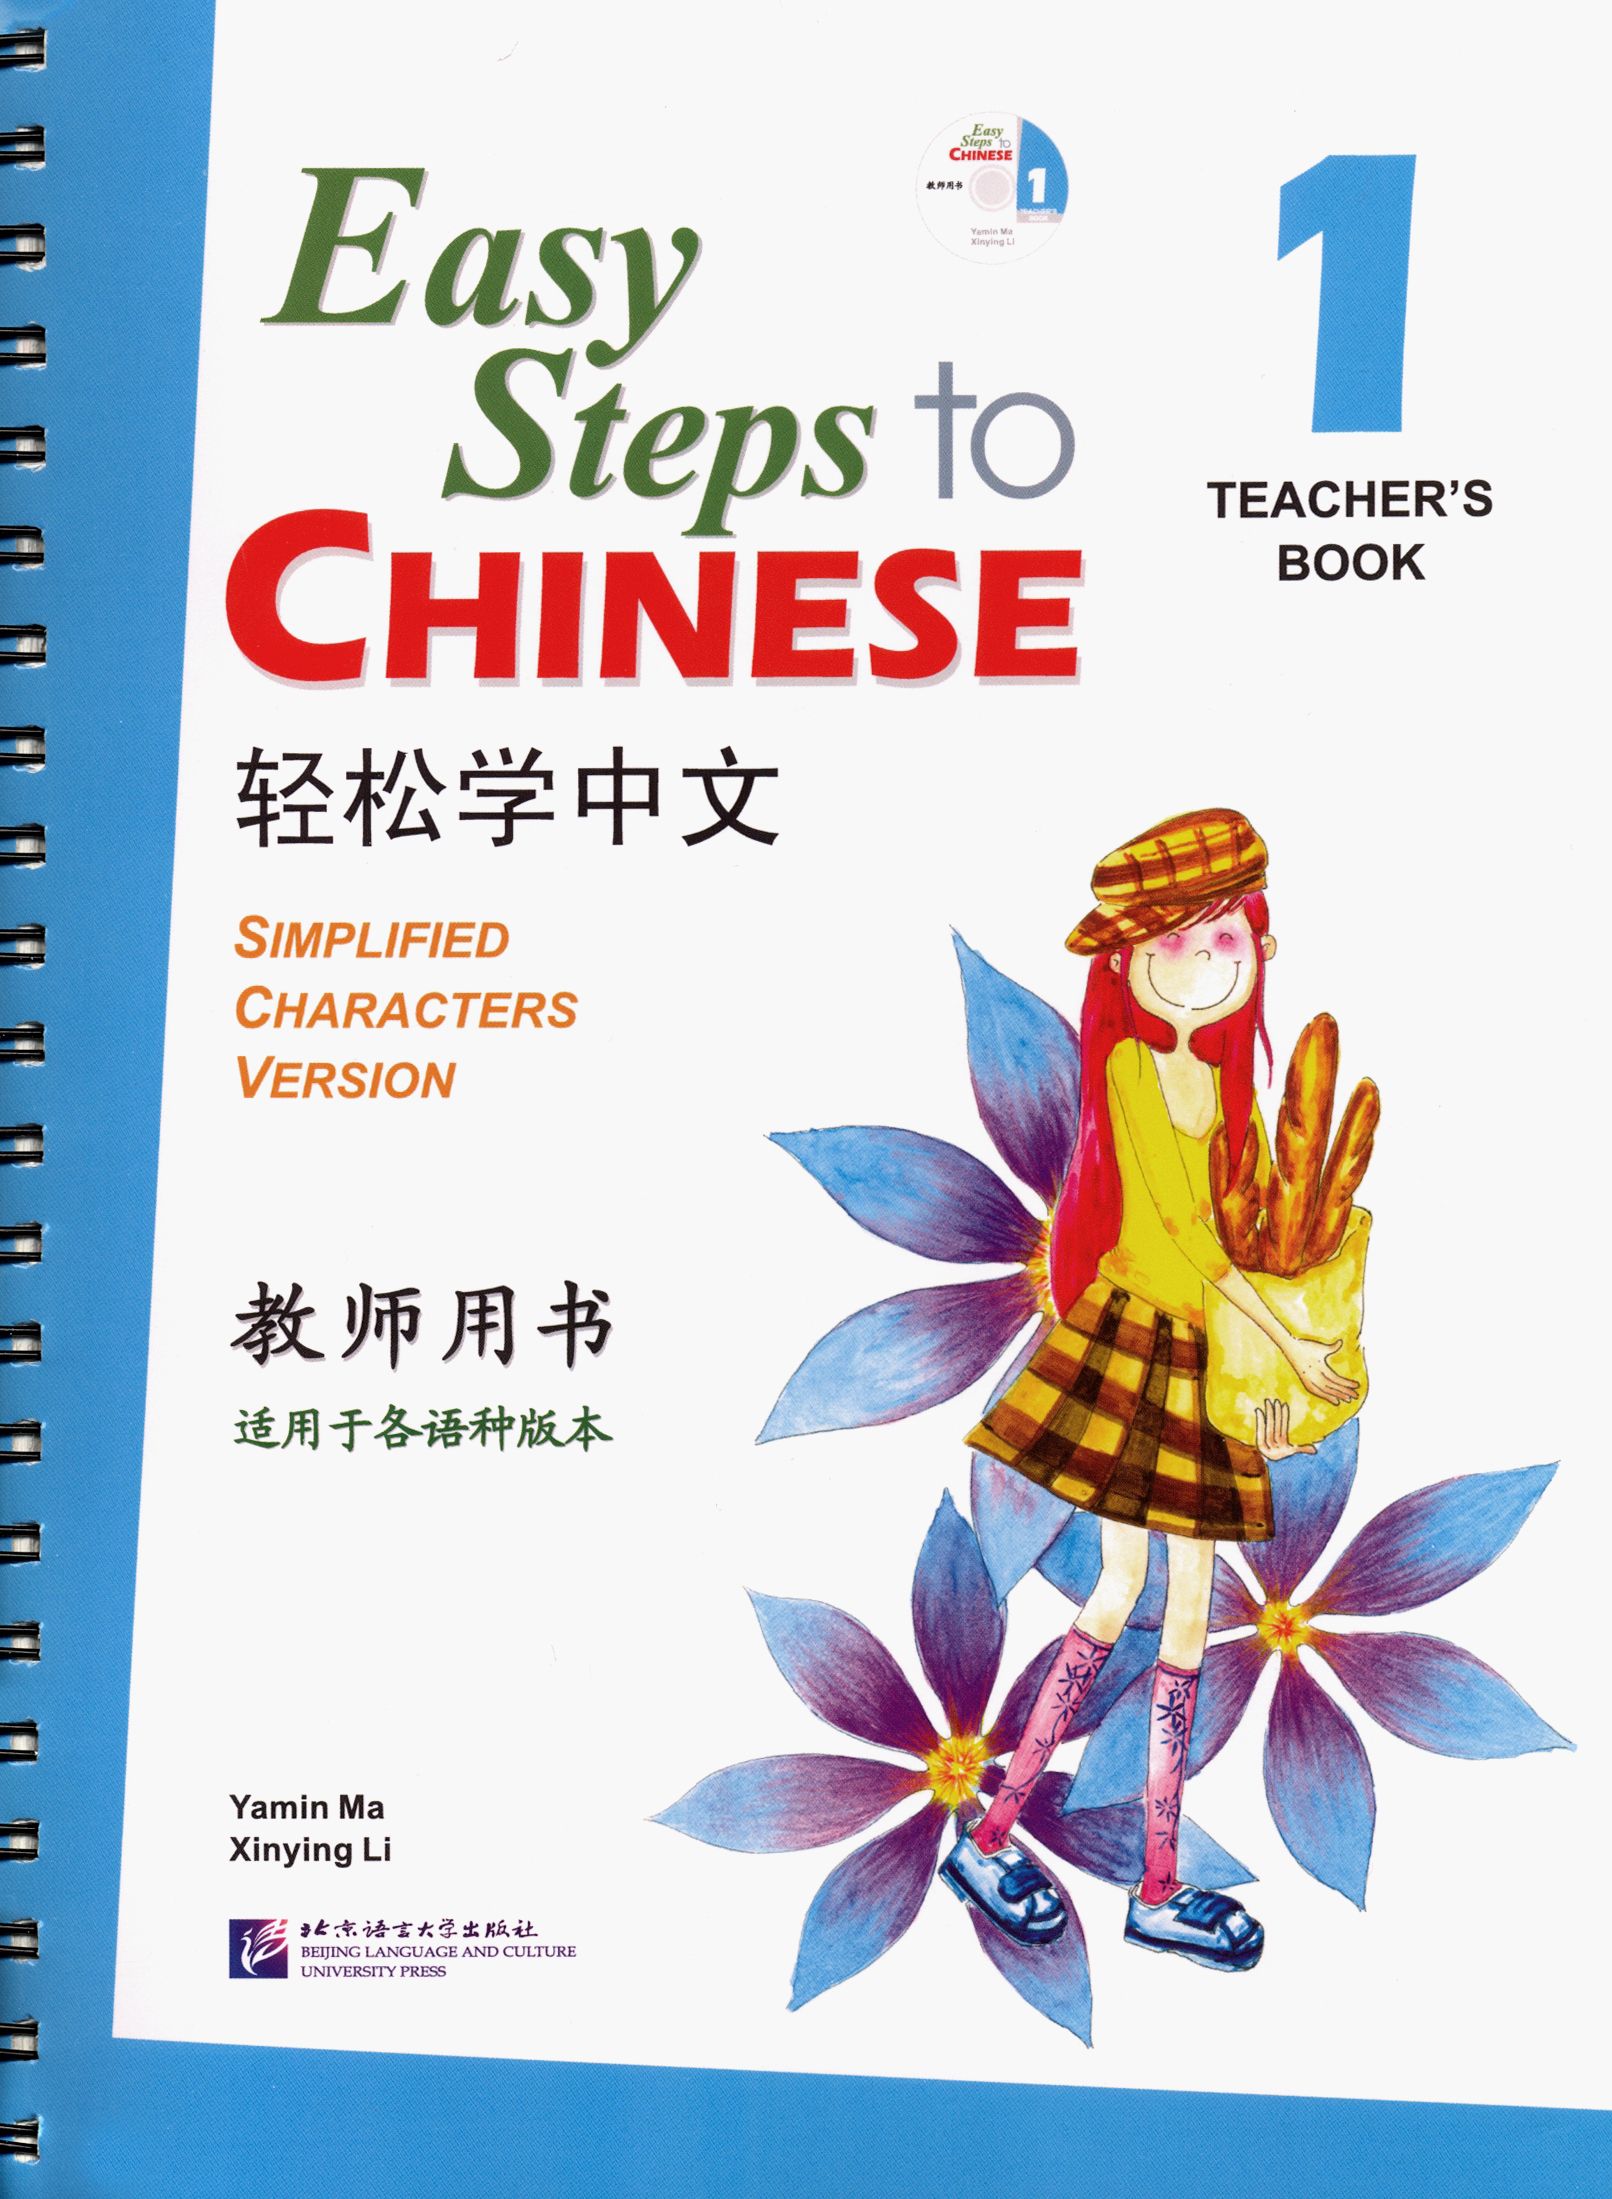 Легкий китайский учебник. Учебник easy steps to Chinese книга. Easy steps to Chinese рабочая тетрадь. Учебник китайского языка для детей. Учебники по китайскому языку для детей.